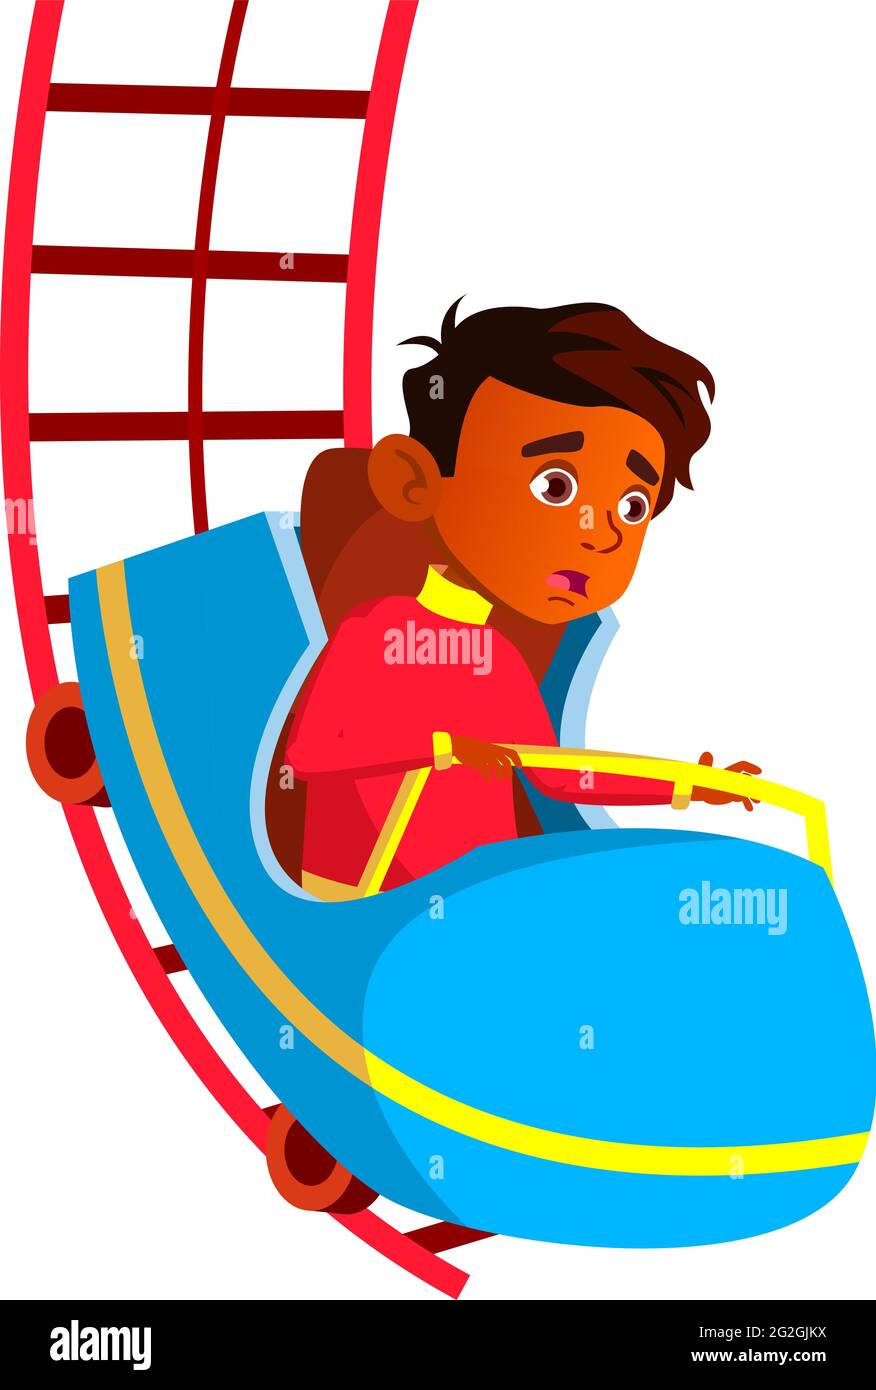 scared indian boy riding roller coaster in amusement park cartoon vector Stock Vector